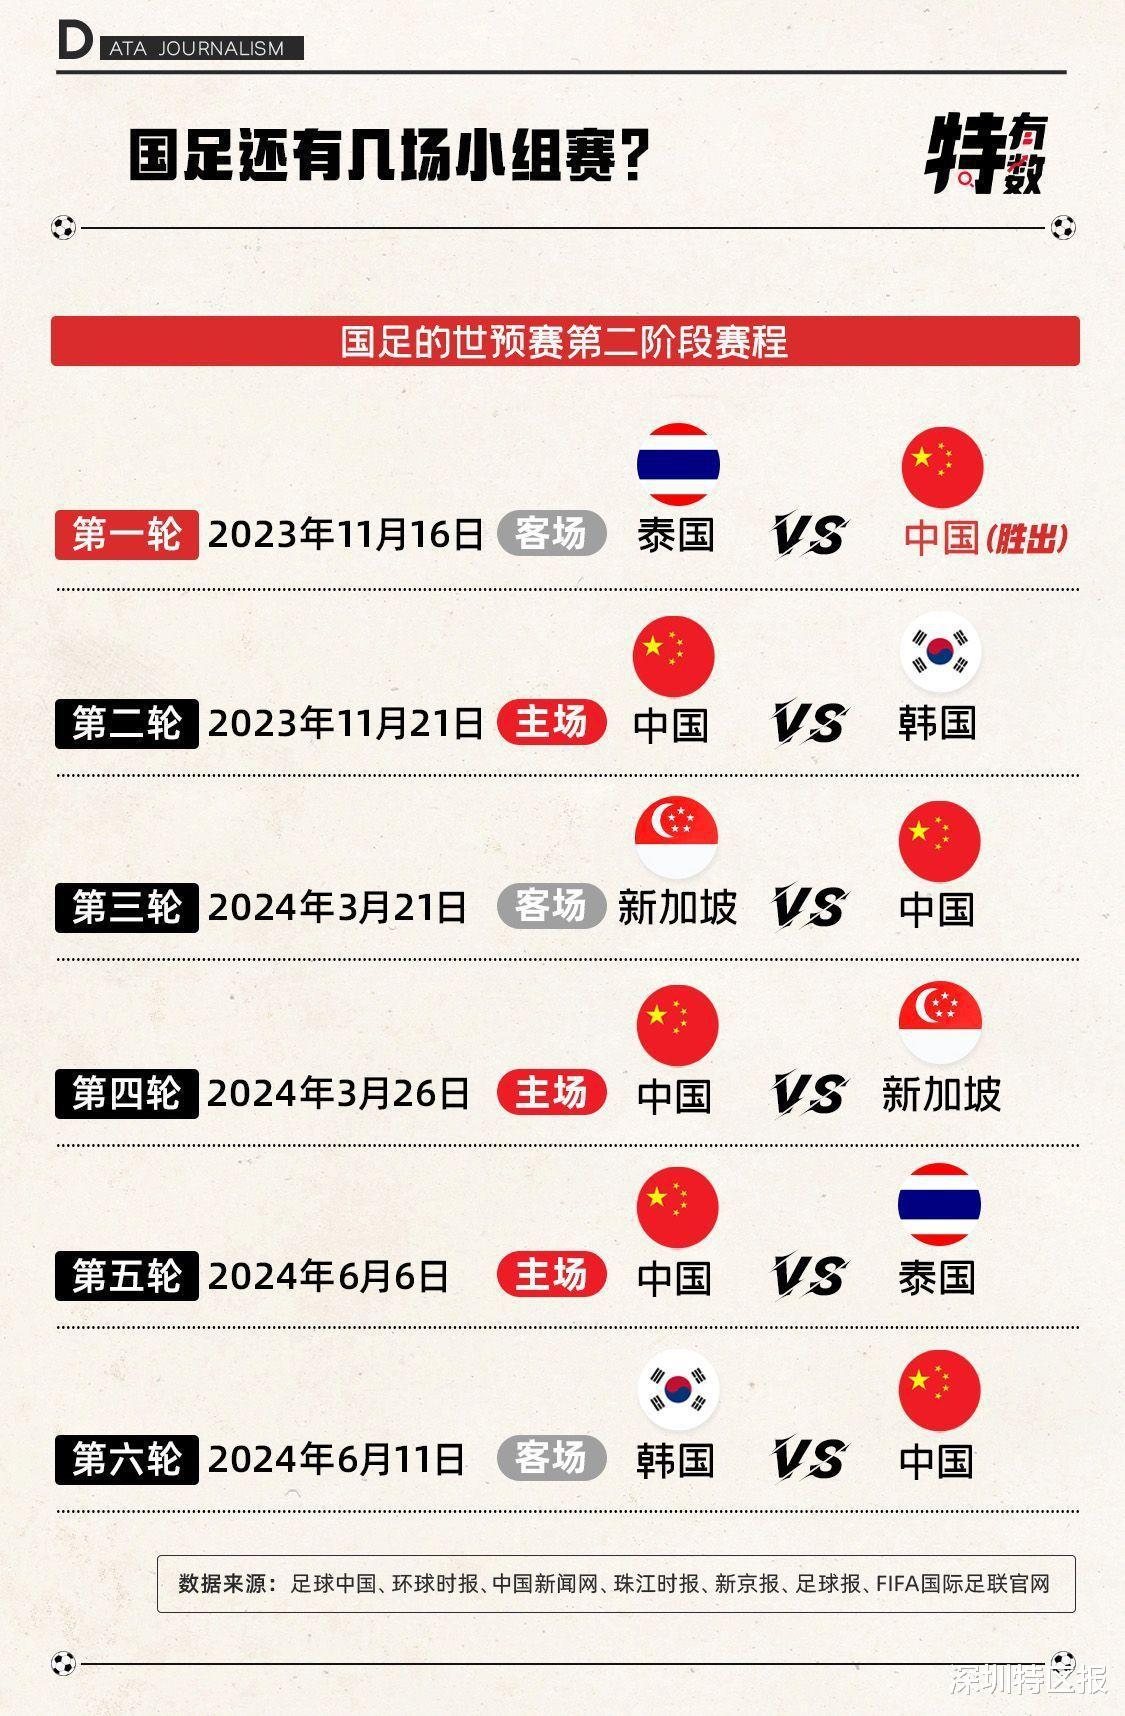 大战在即！数字透析世预赛中韩深圳对决 | 特有数(4)